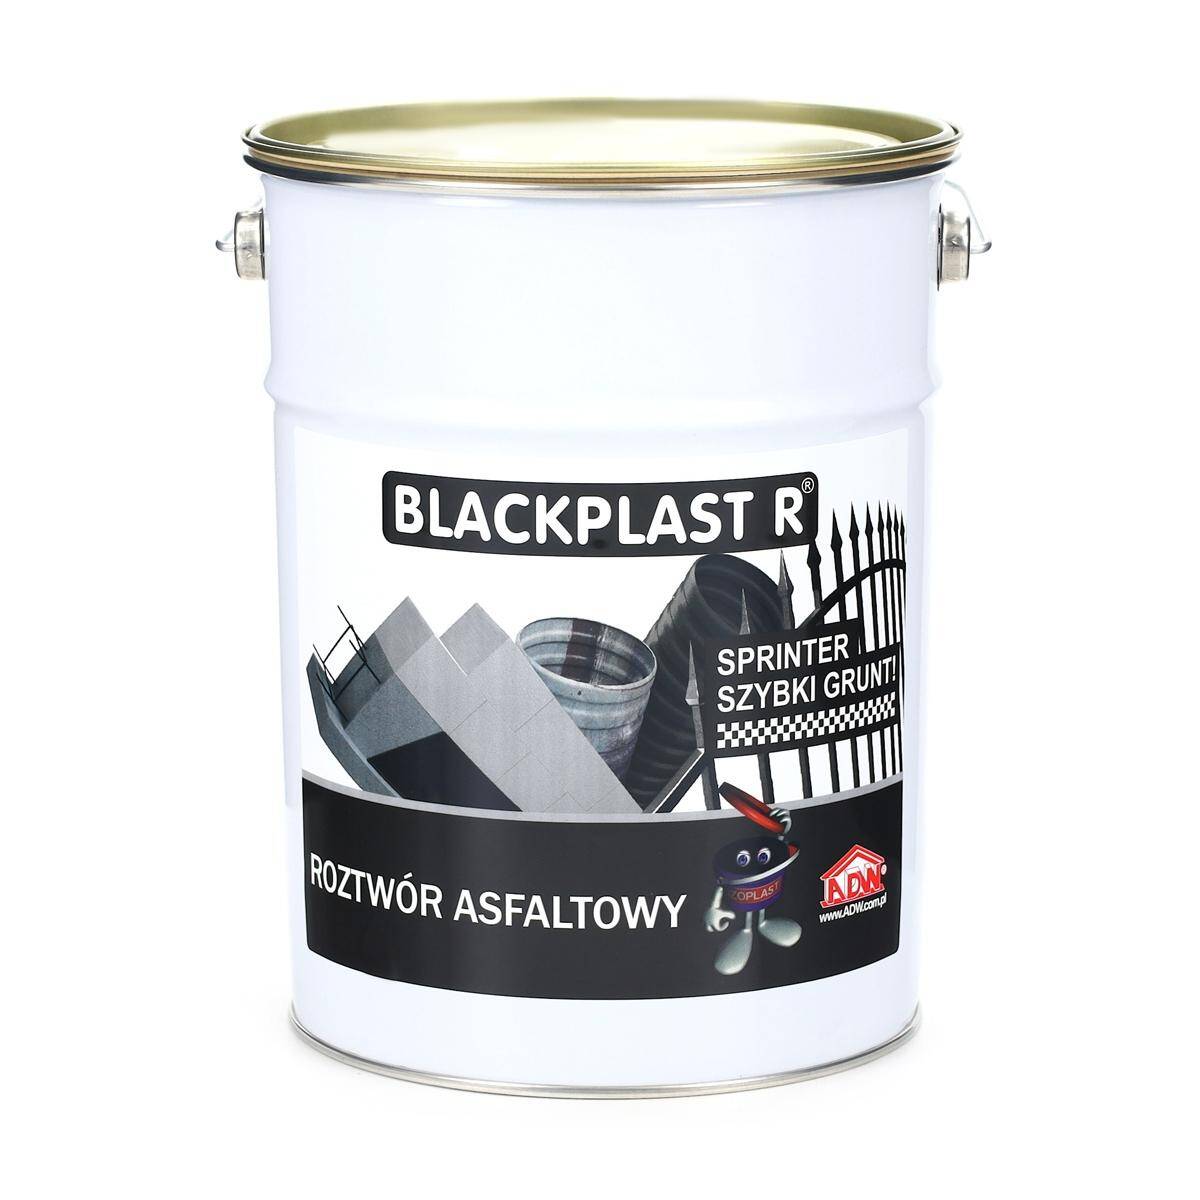 BLACKPLAST R roztwór asfaltowy szybki grunt 5 L